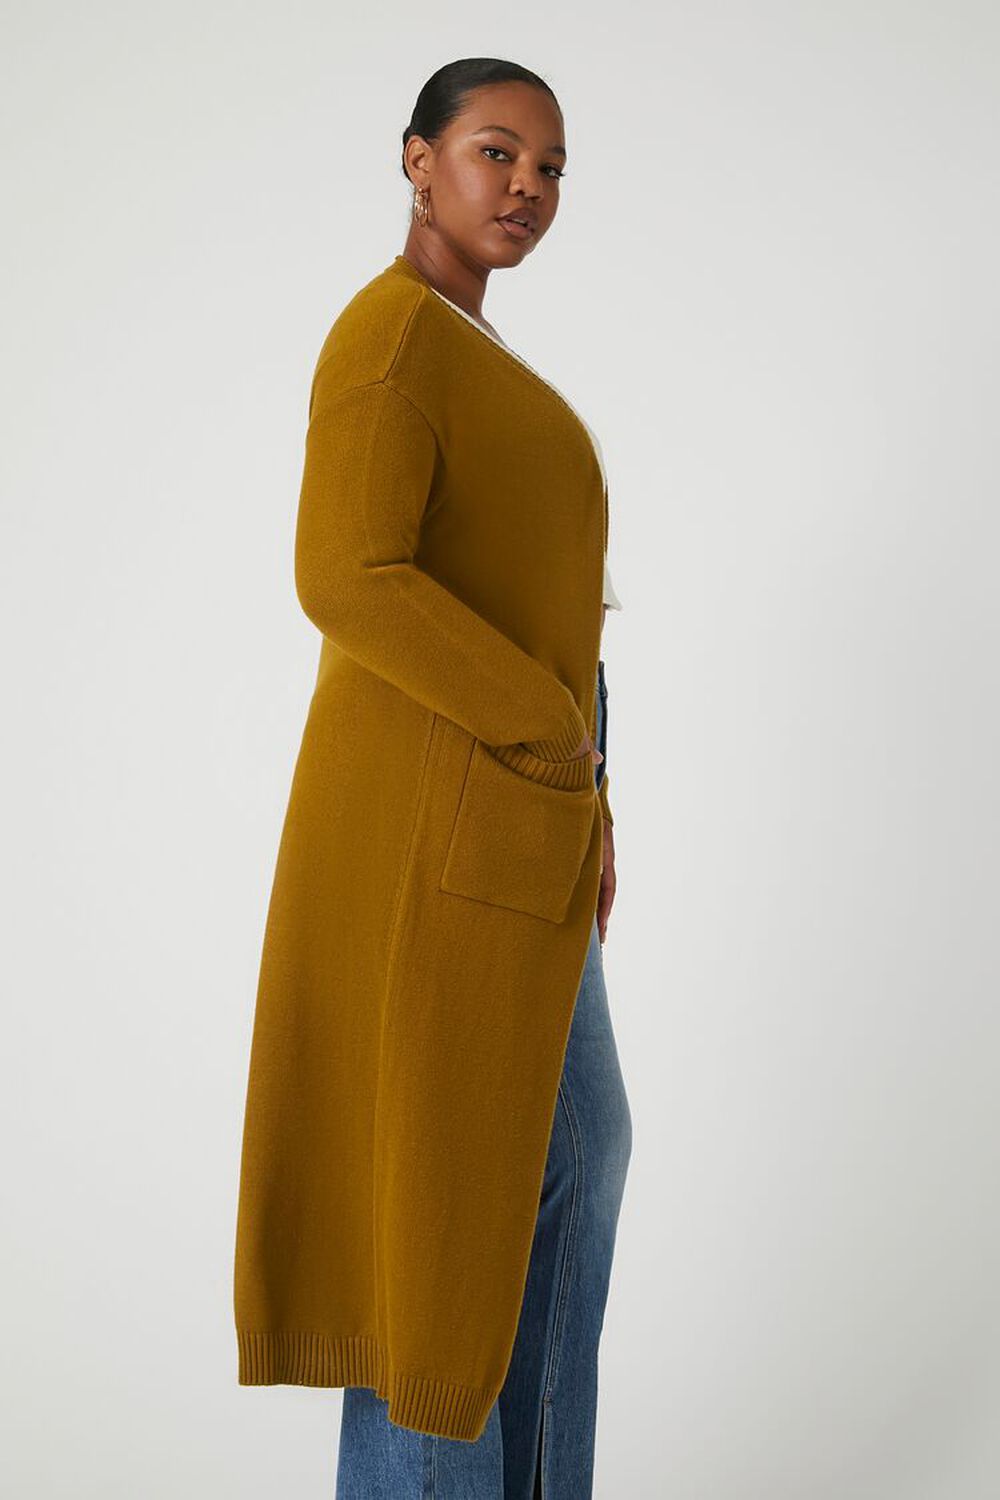 CIGAR Plus Size Longline Cardigan Sweater, image 3